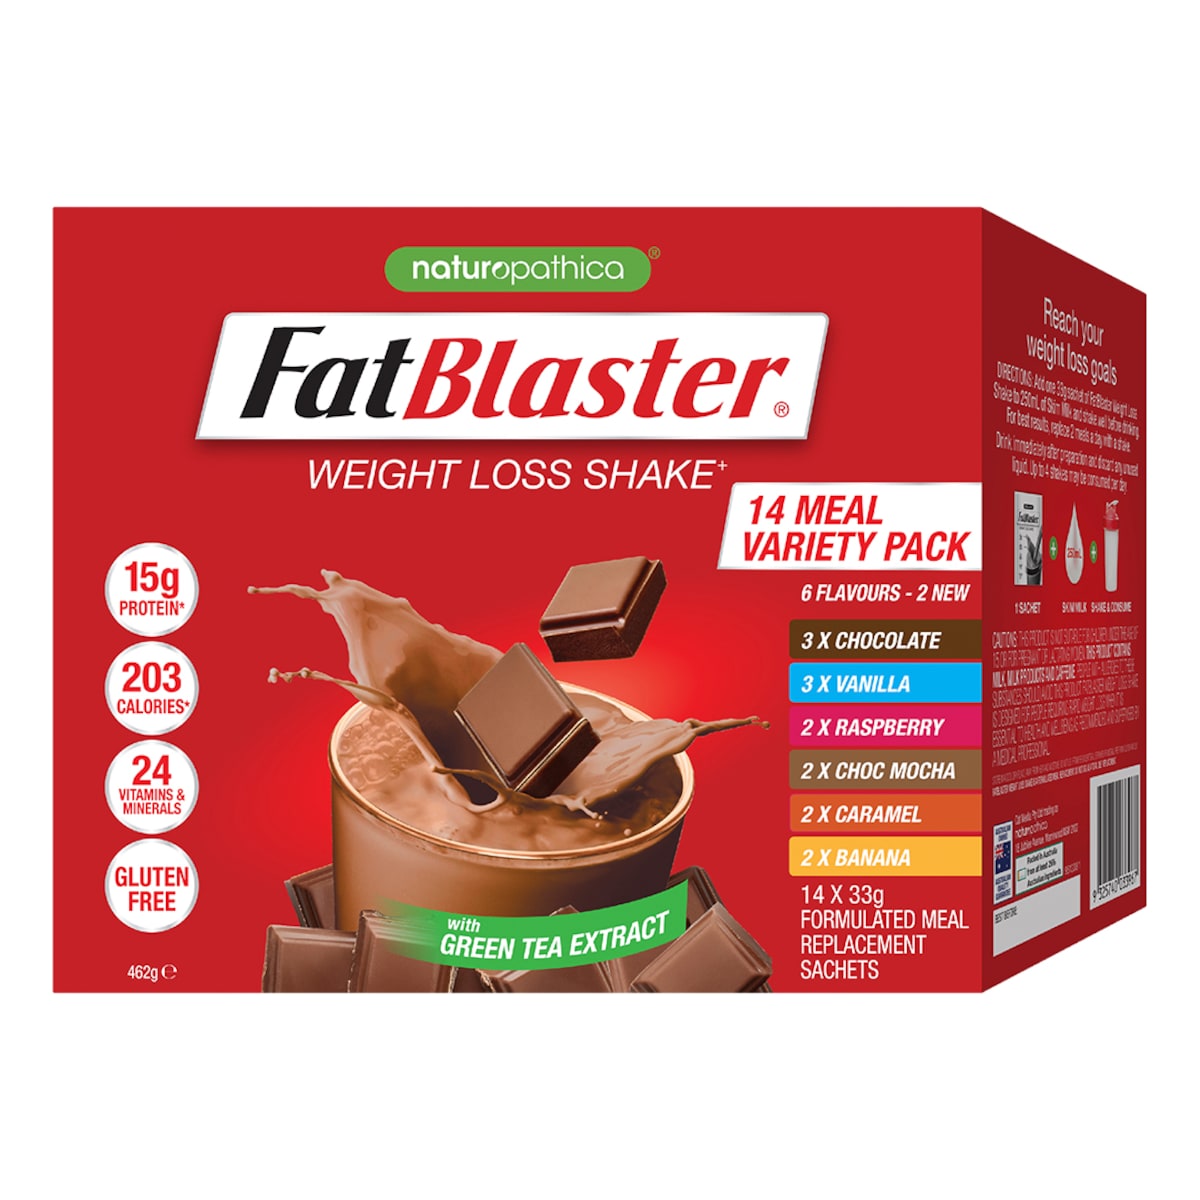 Naturopathica FatBlaster Weight Loss Shake Variety Pack 14 x 33g Sachets Australia